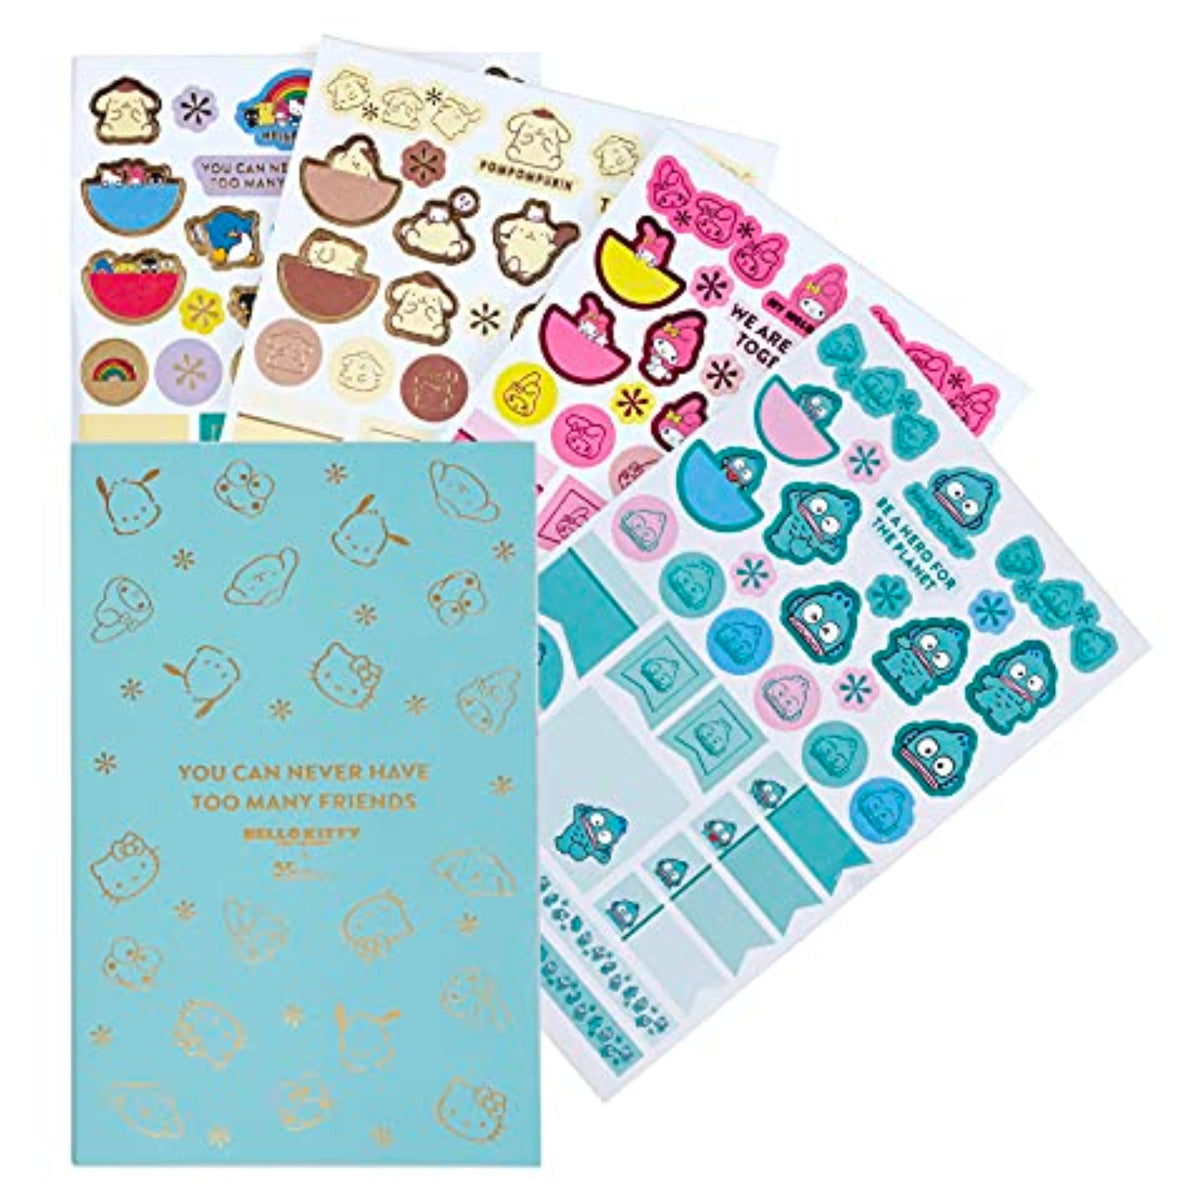 Hello Kitty Sticker Book